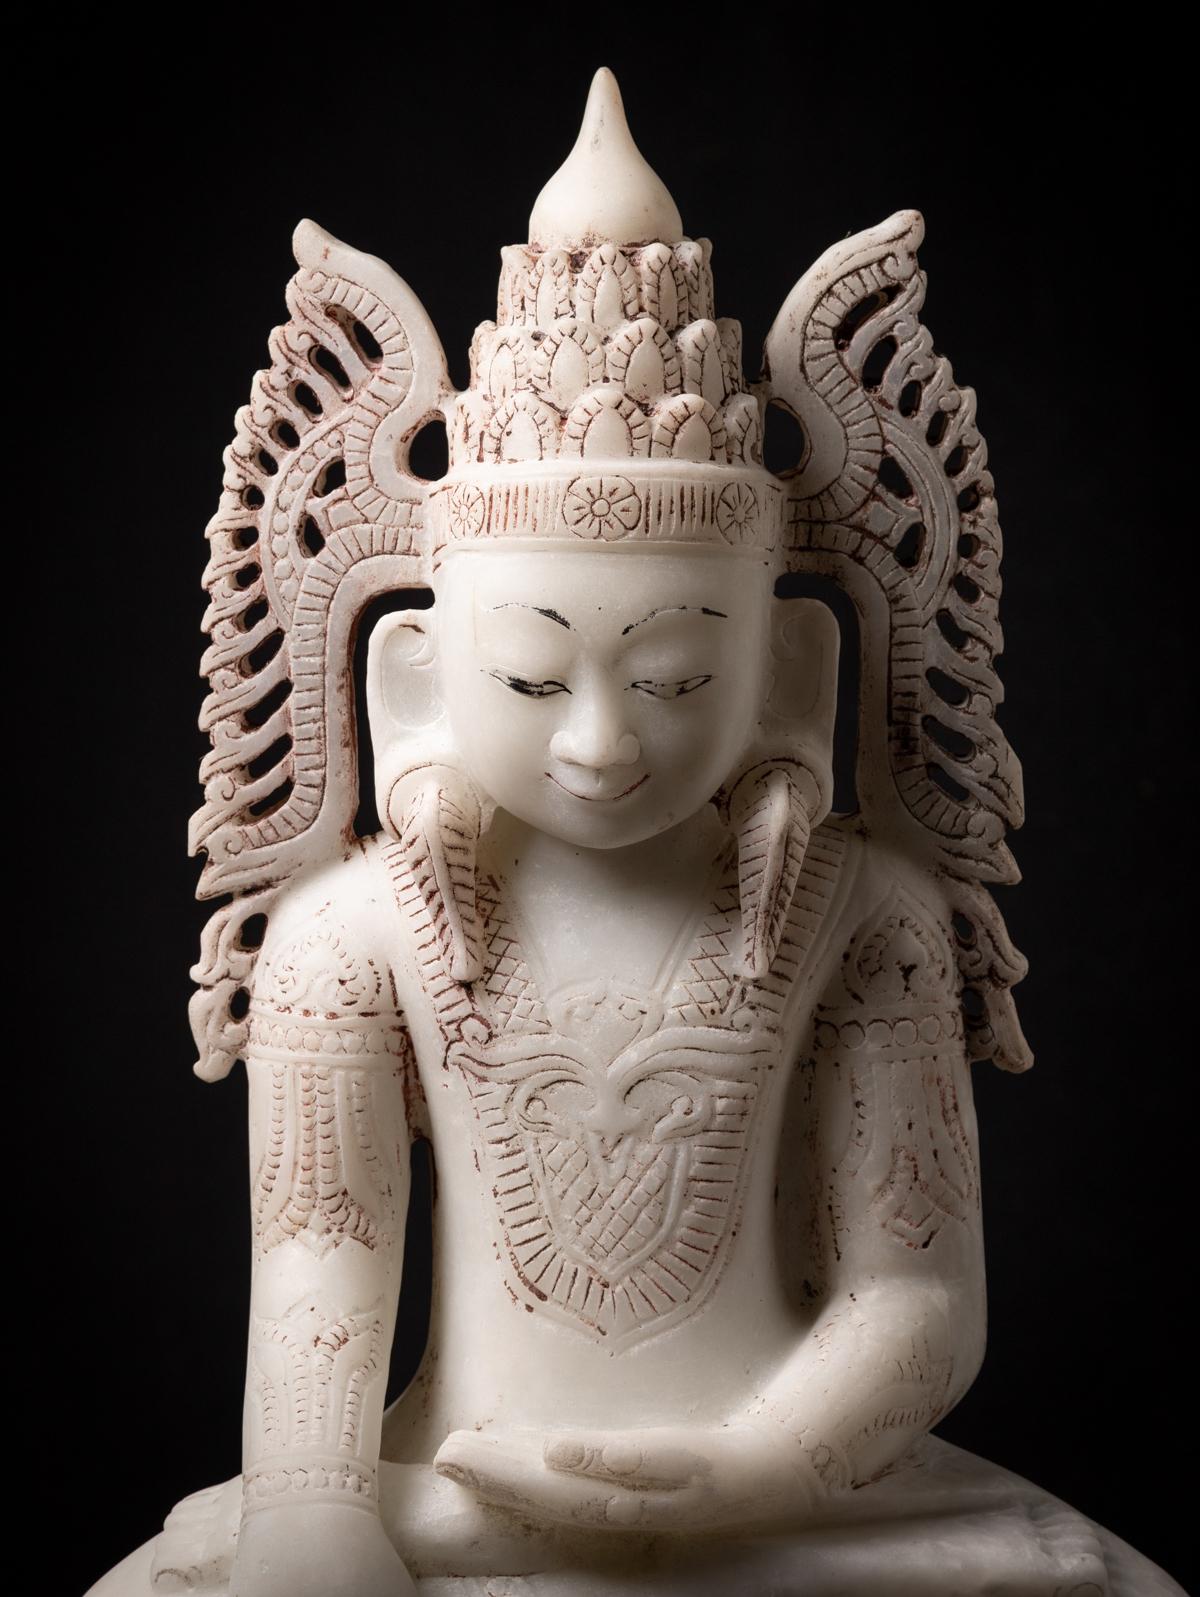 MATERIAL : Marmor
70 cm hoch
39,5 cm breit und 18,5 cm tief
Shan (Tai Yai) Stil
Bhumisparsha Mudra
Ende 19. / Anfang 20. Jahrhundert
In schöner Qualität, nicht leicht zu finden Buddha-Statuen in dieser Größe und Qualität !
Kann weltweit verschickt